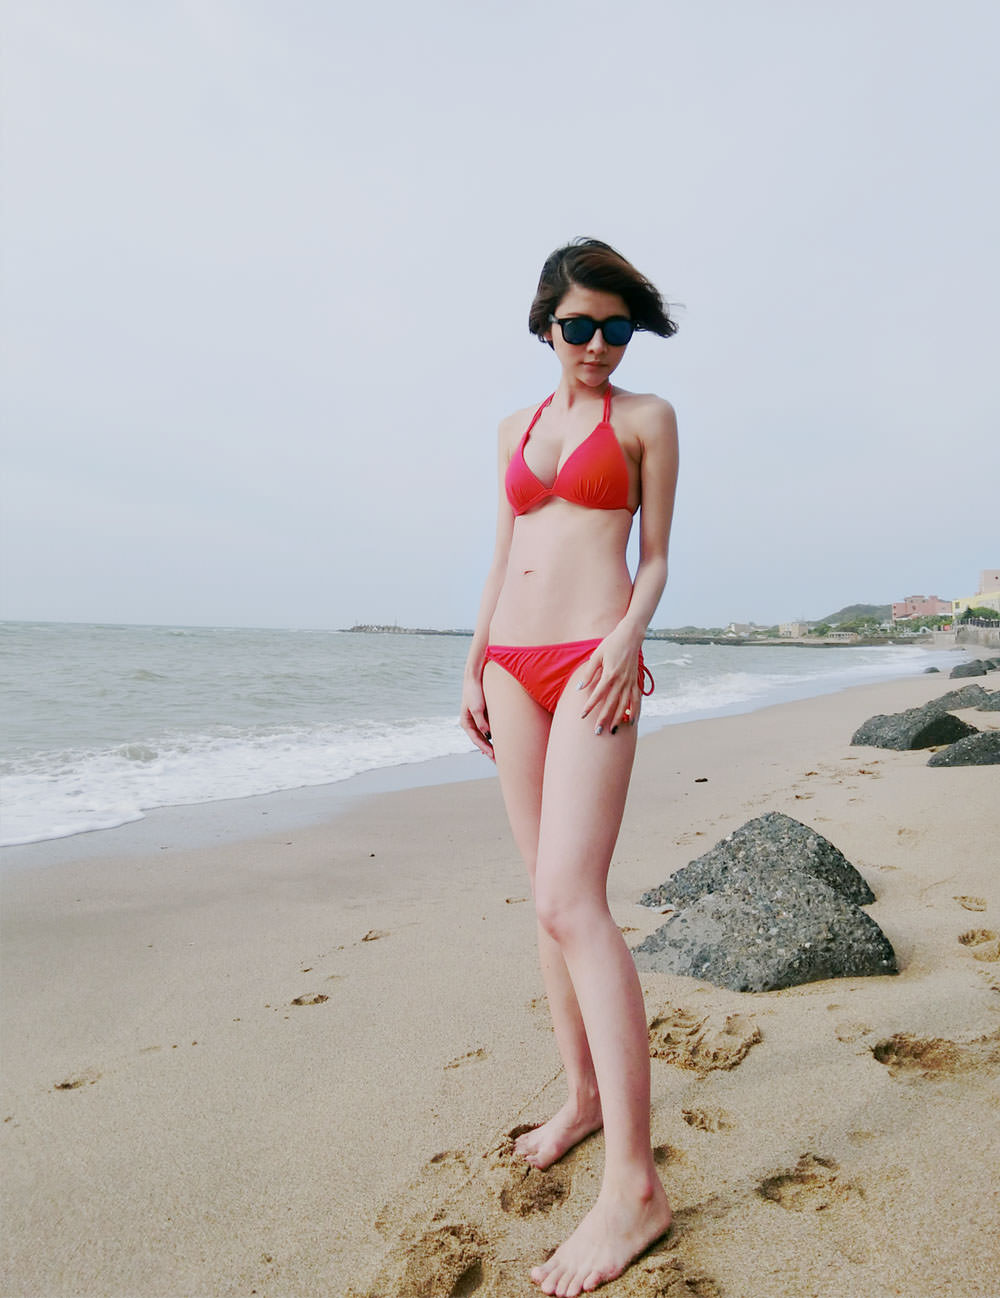 [泳衣] WAVE SHINE Bikini美波神器,海邊必備超強比基尼,小胸也可以出現漂亮的溝溝